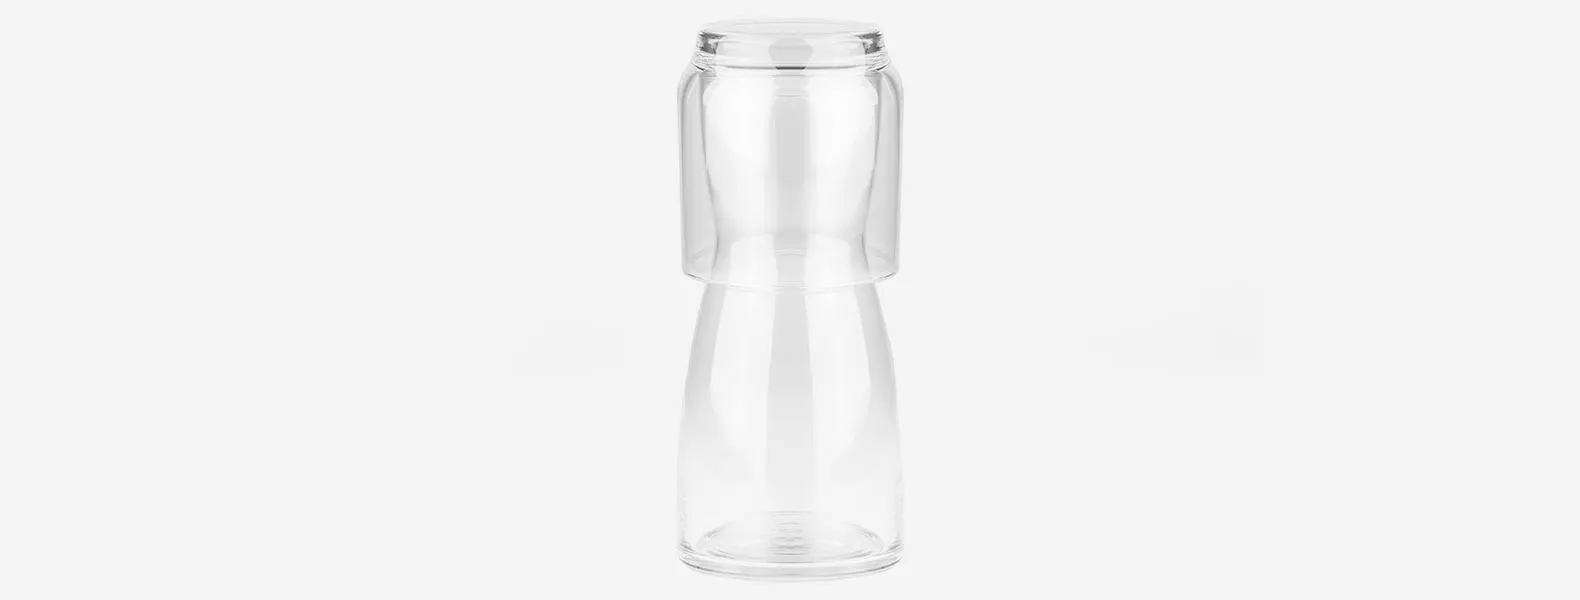 Kit contendo uma moringa de vidro e um copo acomodados em embalagem para presentear.